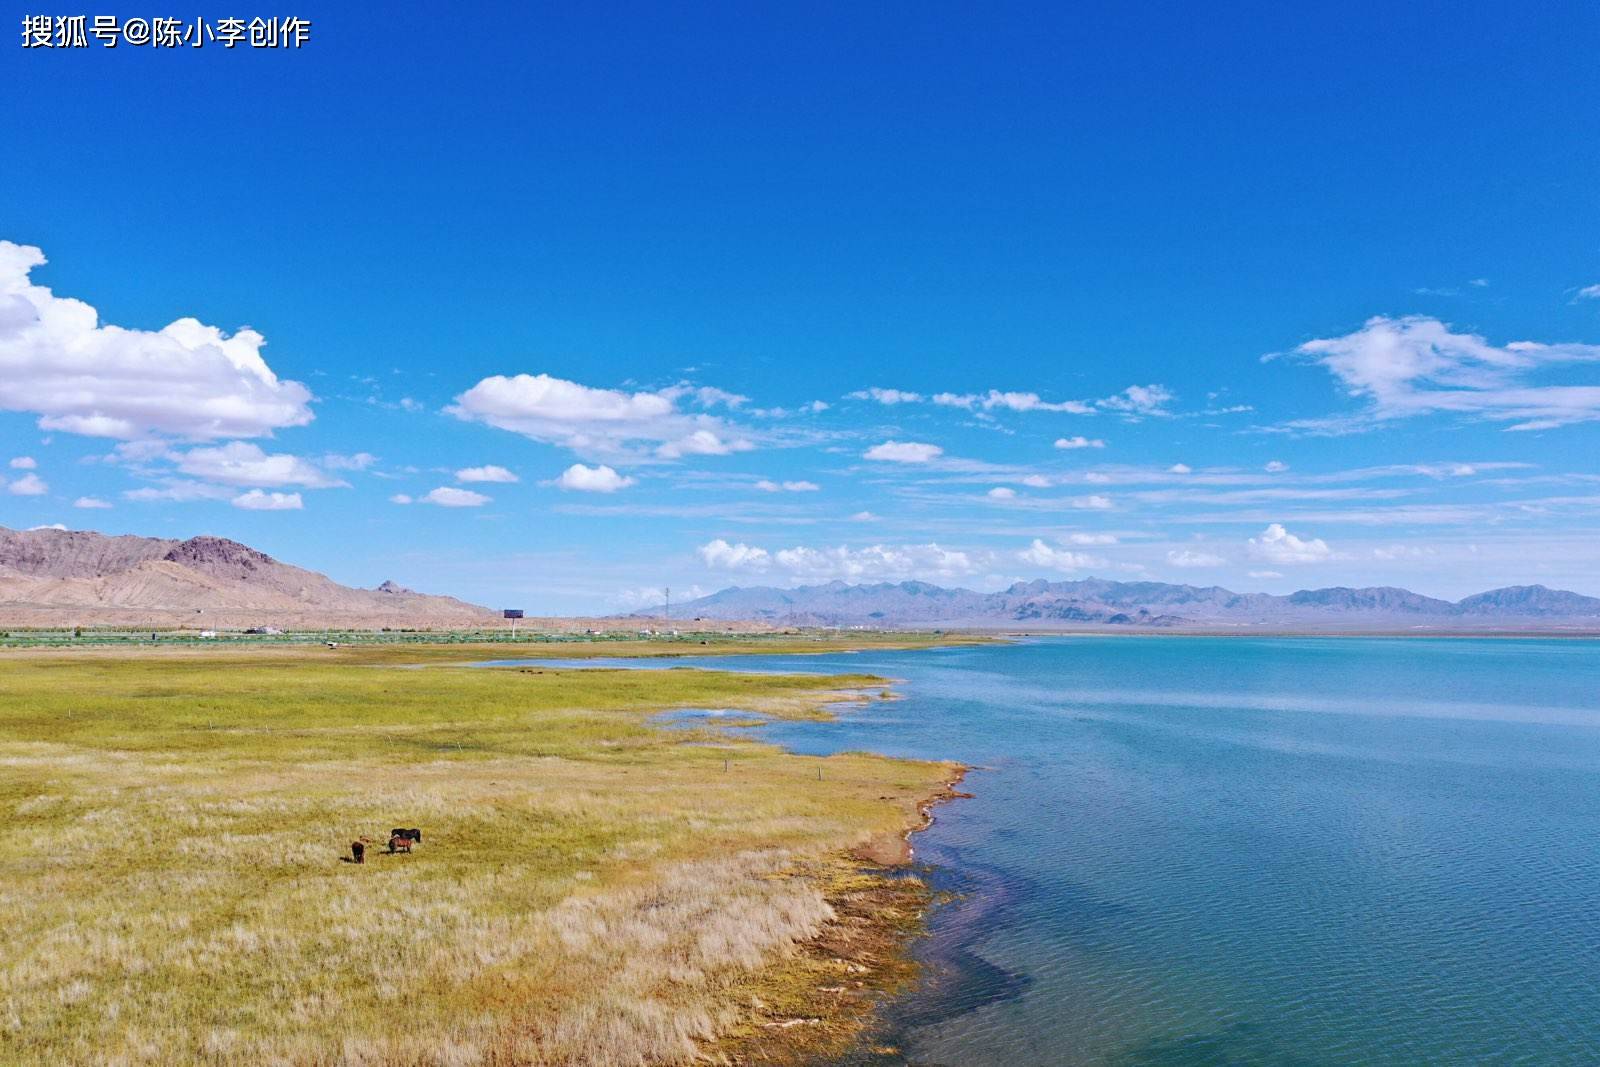 青海尕海湖:鹤舞高原,百鸟翔集,烟波浩渺,水天一色,美呆了!